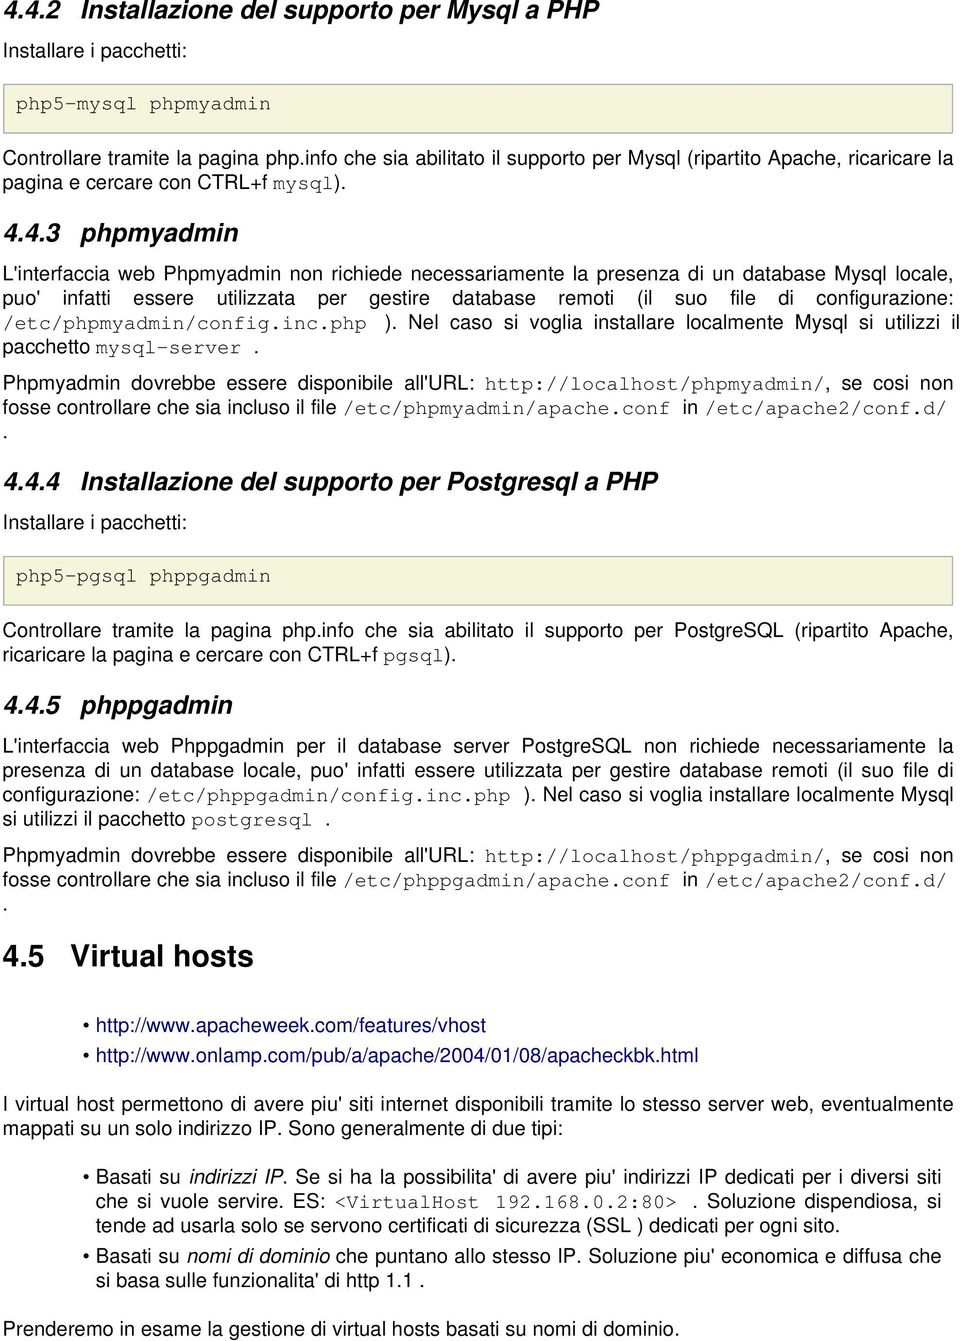 4.3 phpmyadmin L'interfaccia web Phpmyadmin non richiede necessariamente la presenza di un database Mysql locale, puo' infatti essere utilizzata per gestire database remoti (il suo file di